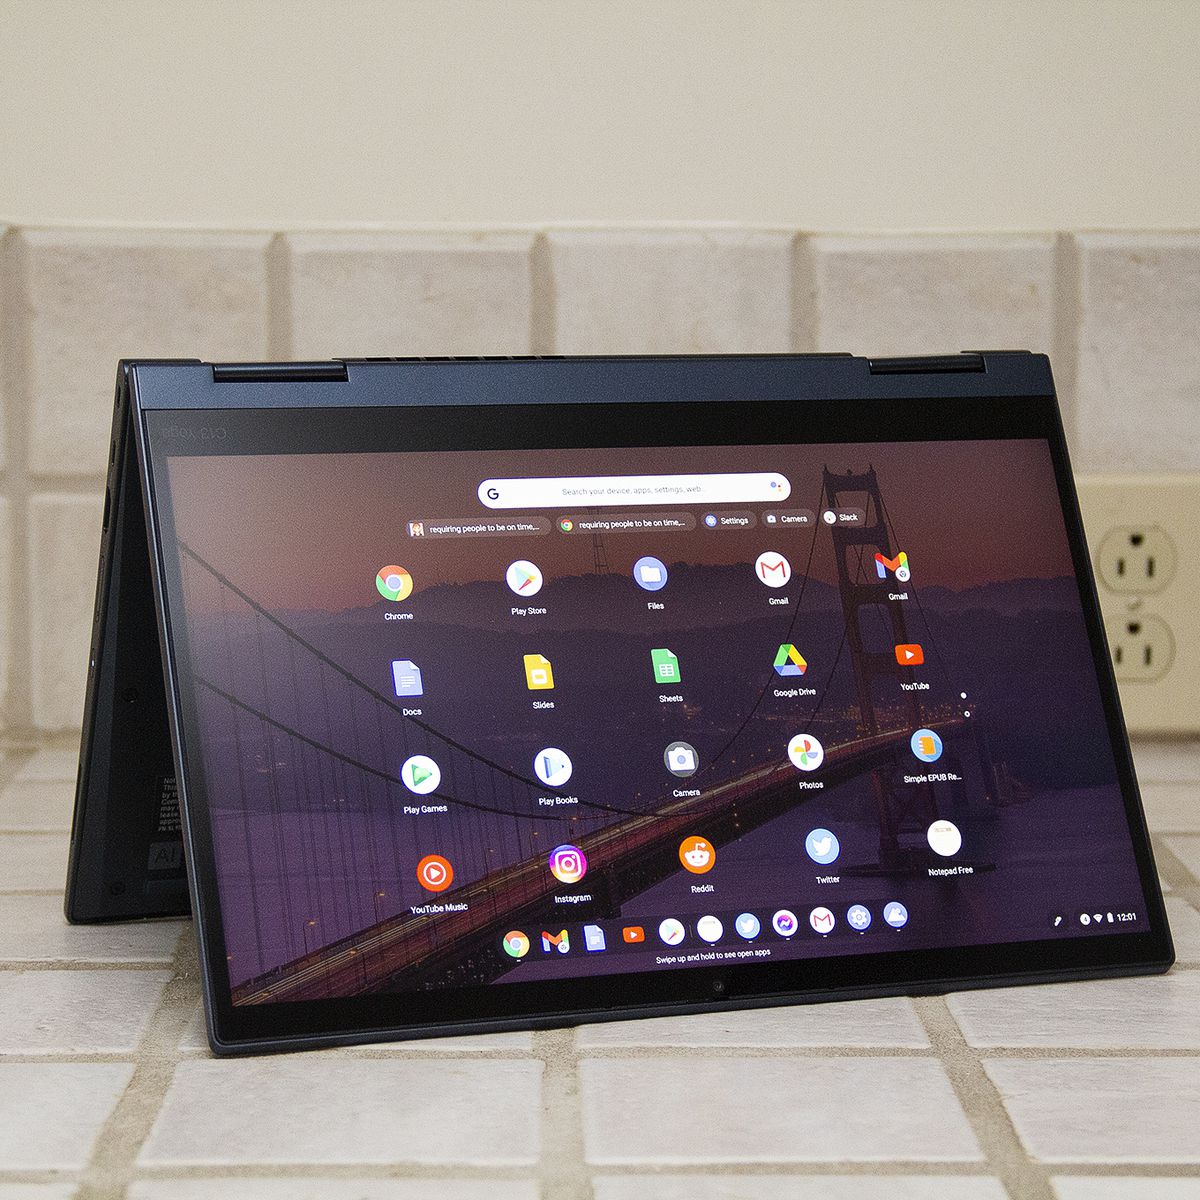 Tente modunda ThinkPad C13 Yoga Chromebook.  Ekranda Android uygulamalarının bir ızgarası görüntülenir.